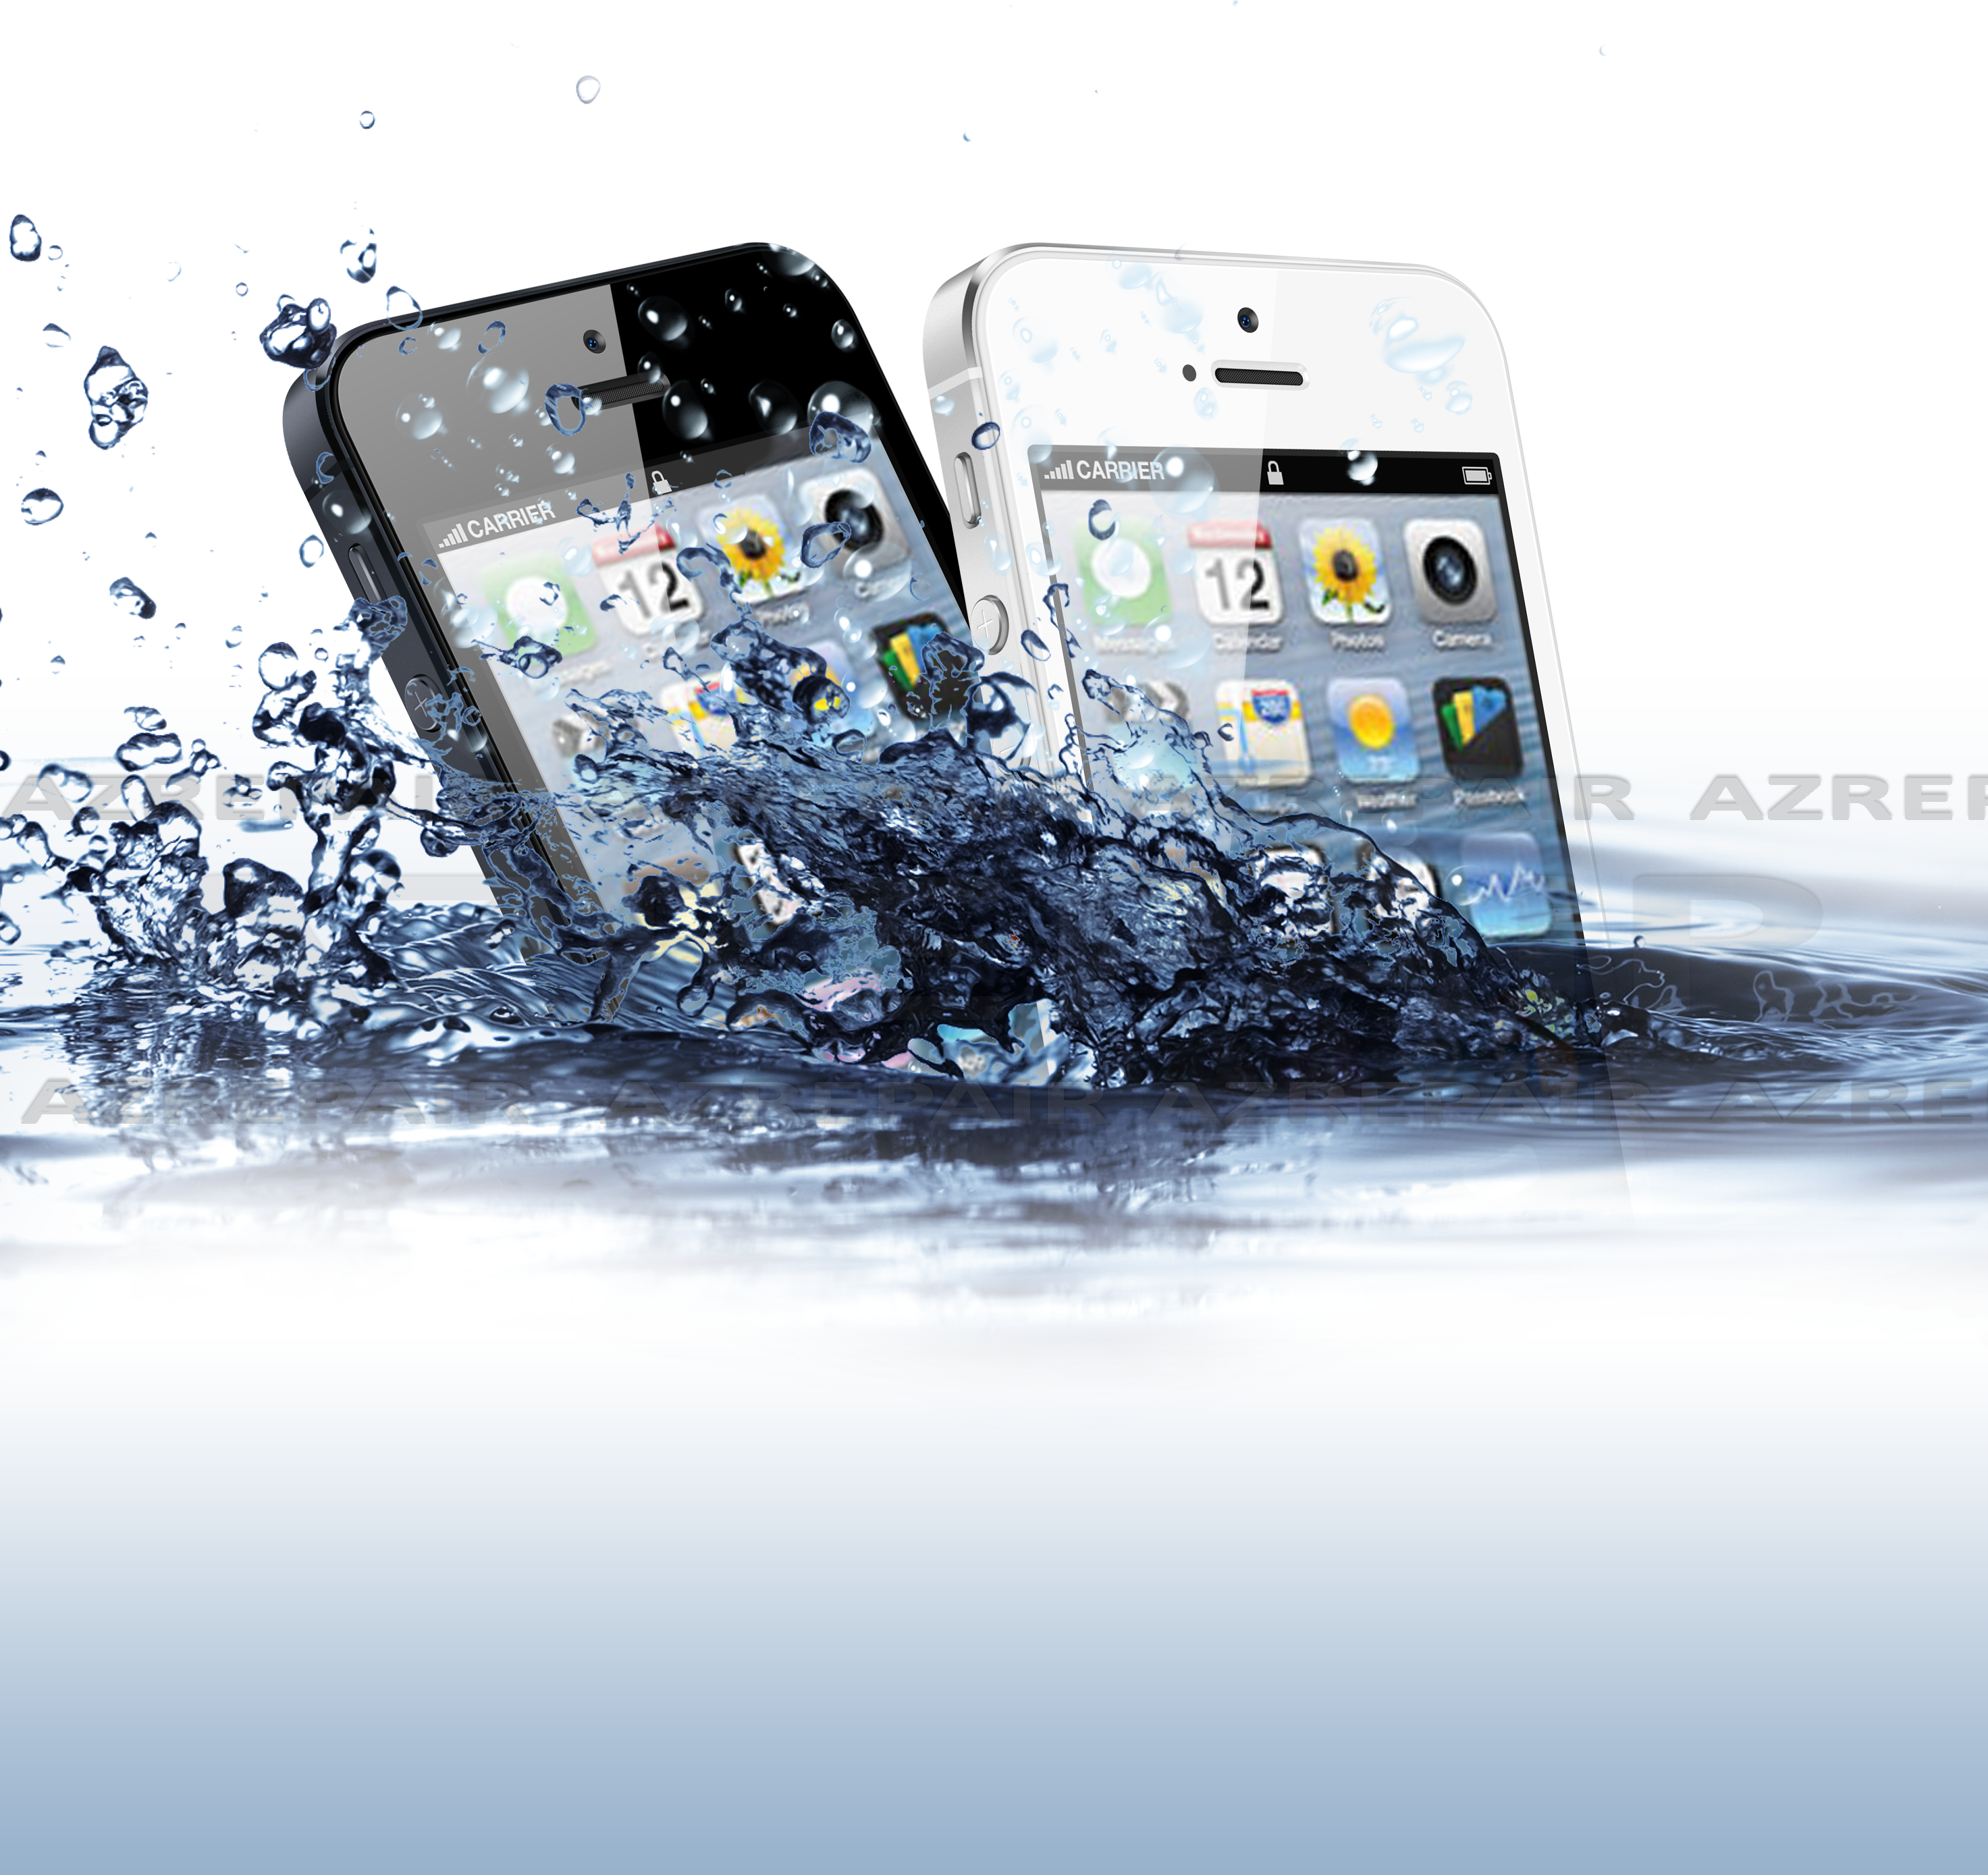 iPhone 5 Réparation, désoxydation d\'un iPhone 5 tombé dans l\'eau